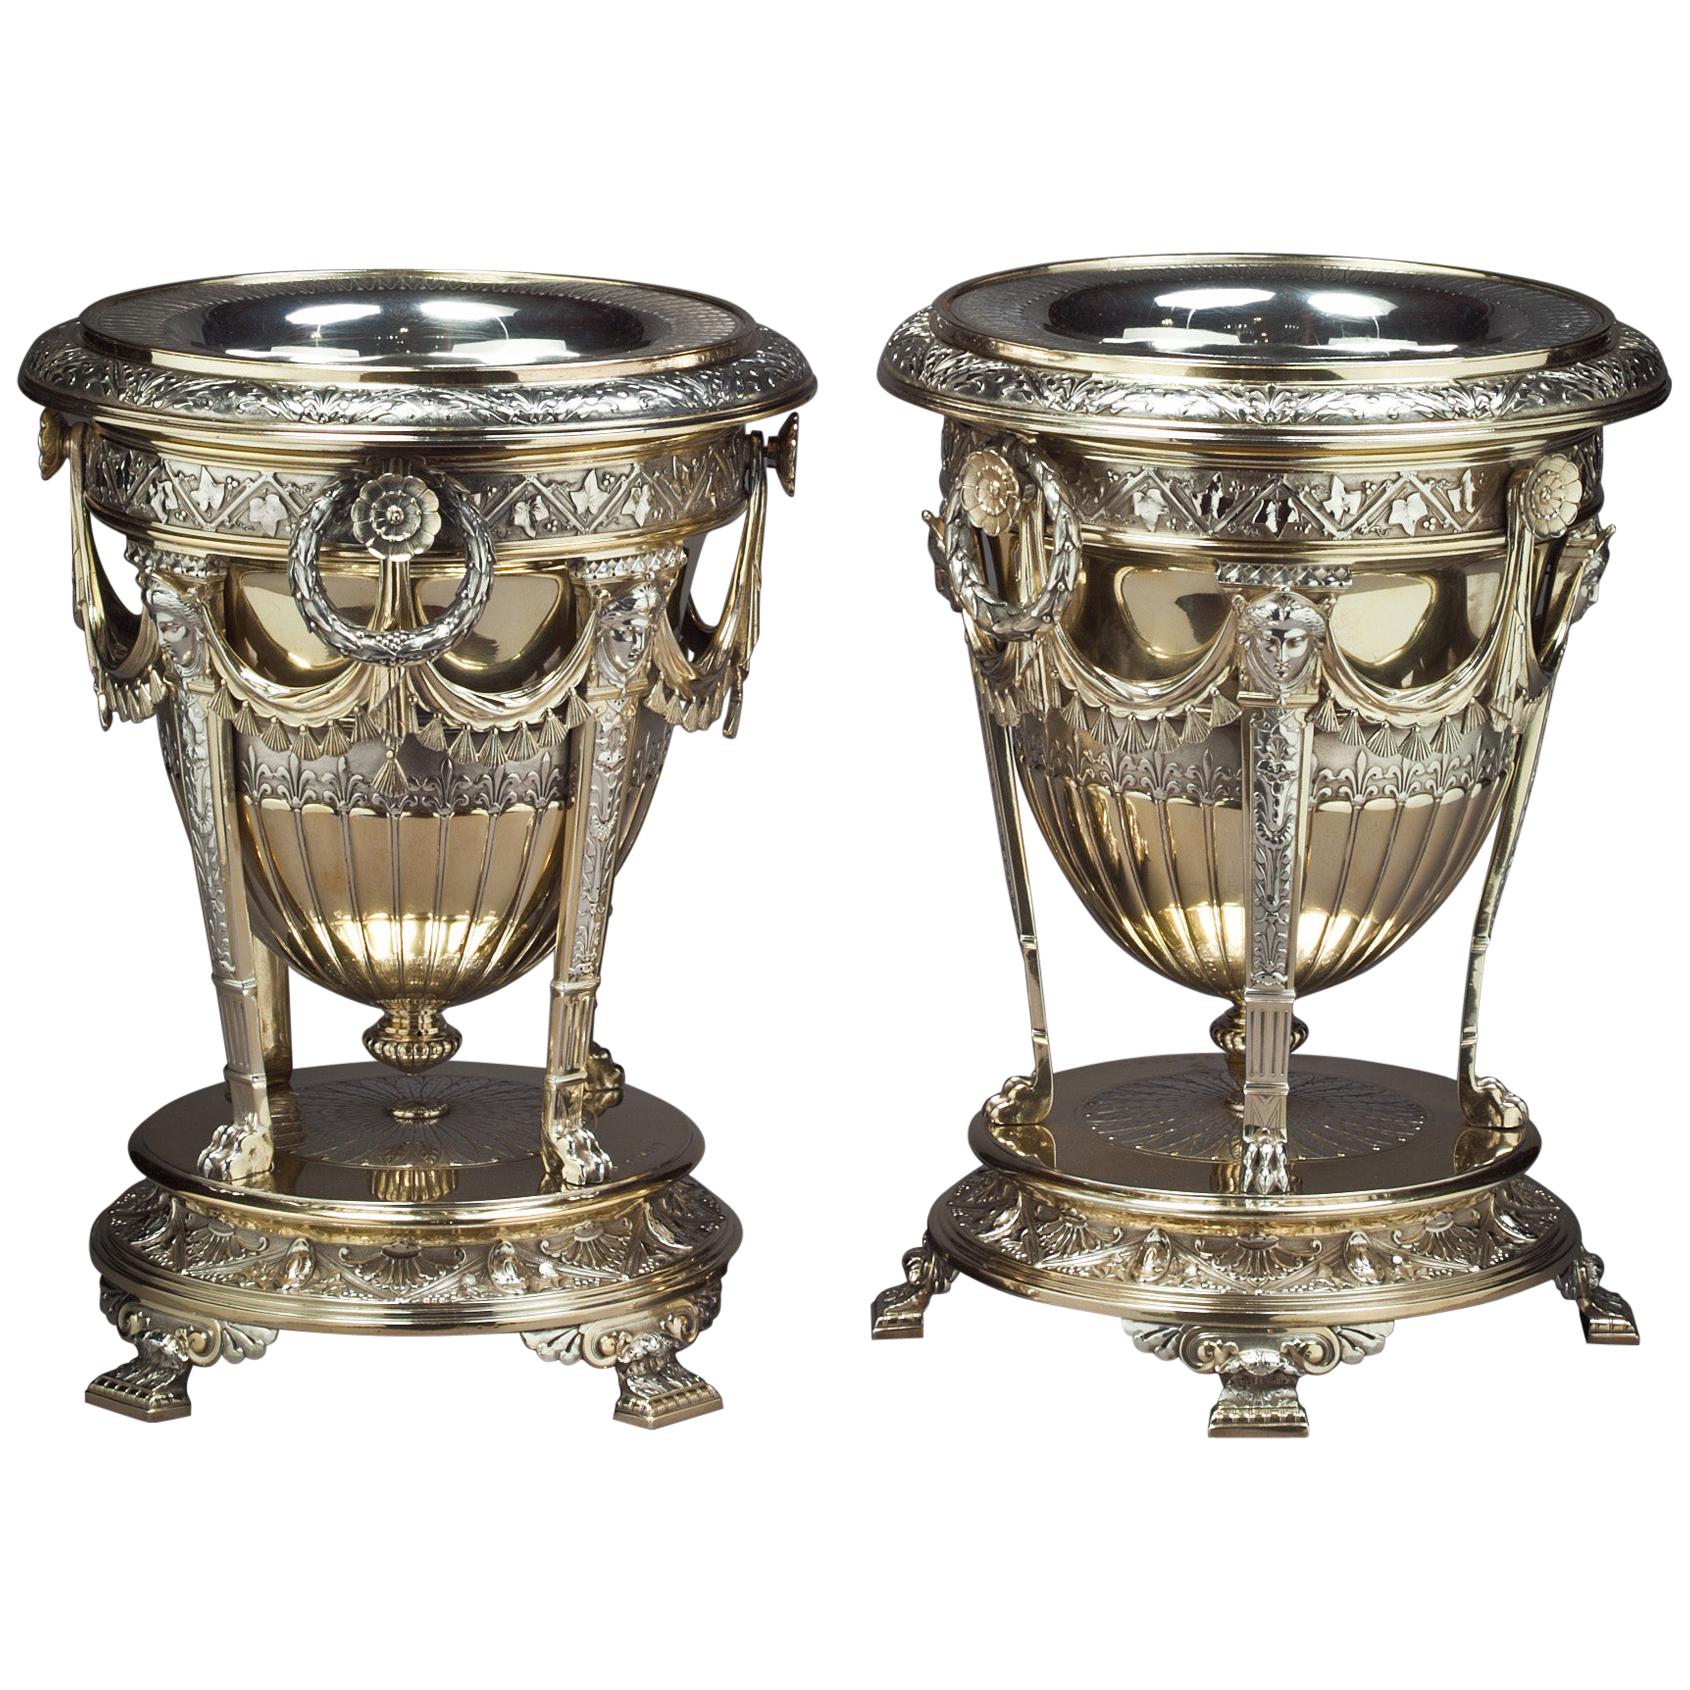 Paar viktorianische Weinkühler aus vergoldetem Silber-Paket